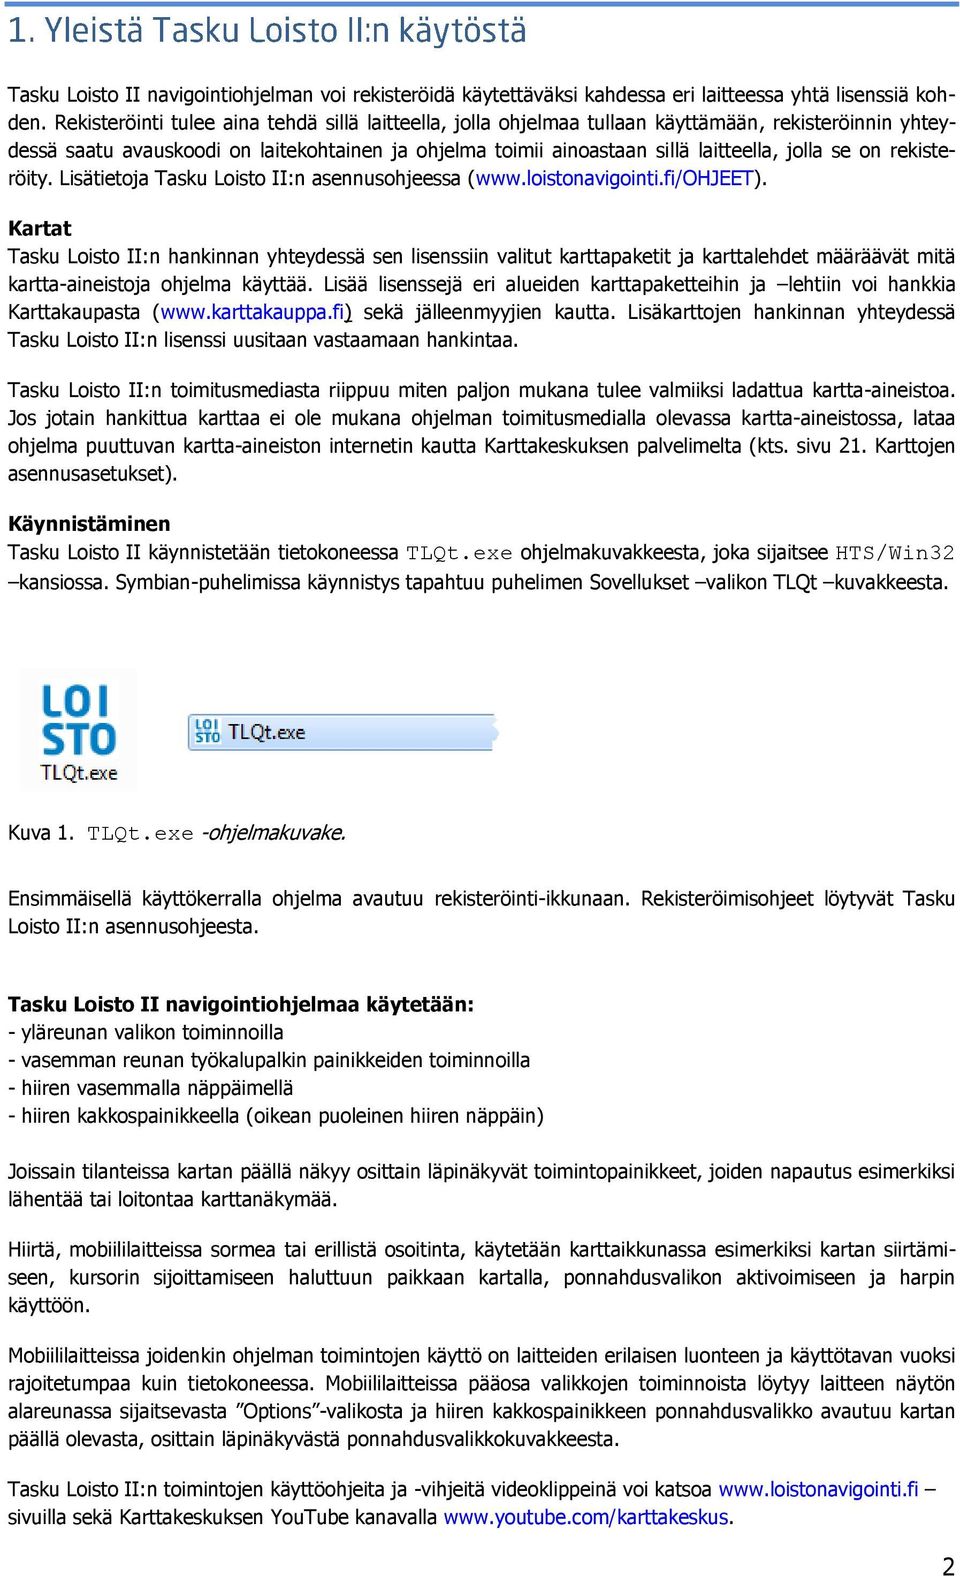 se on rekisteröity. Lisätietoja Tasku Loisto II:n asennusohjeessa (www.loistonavigointi.fi/ohjeet).